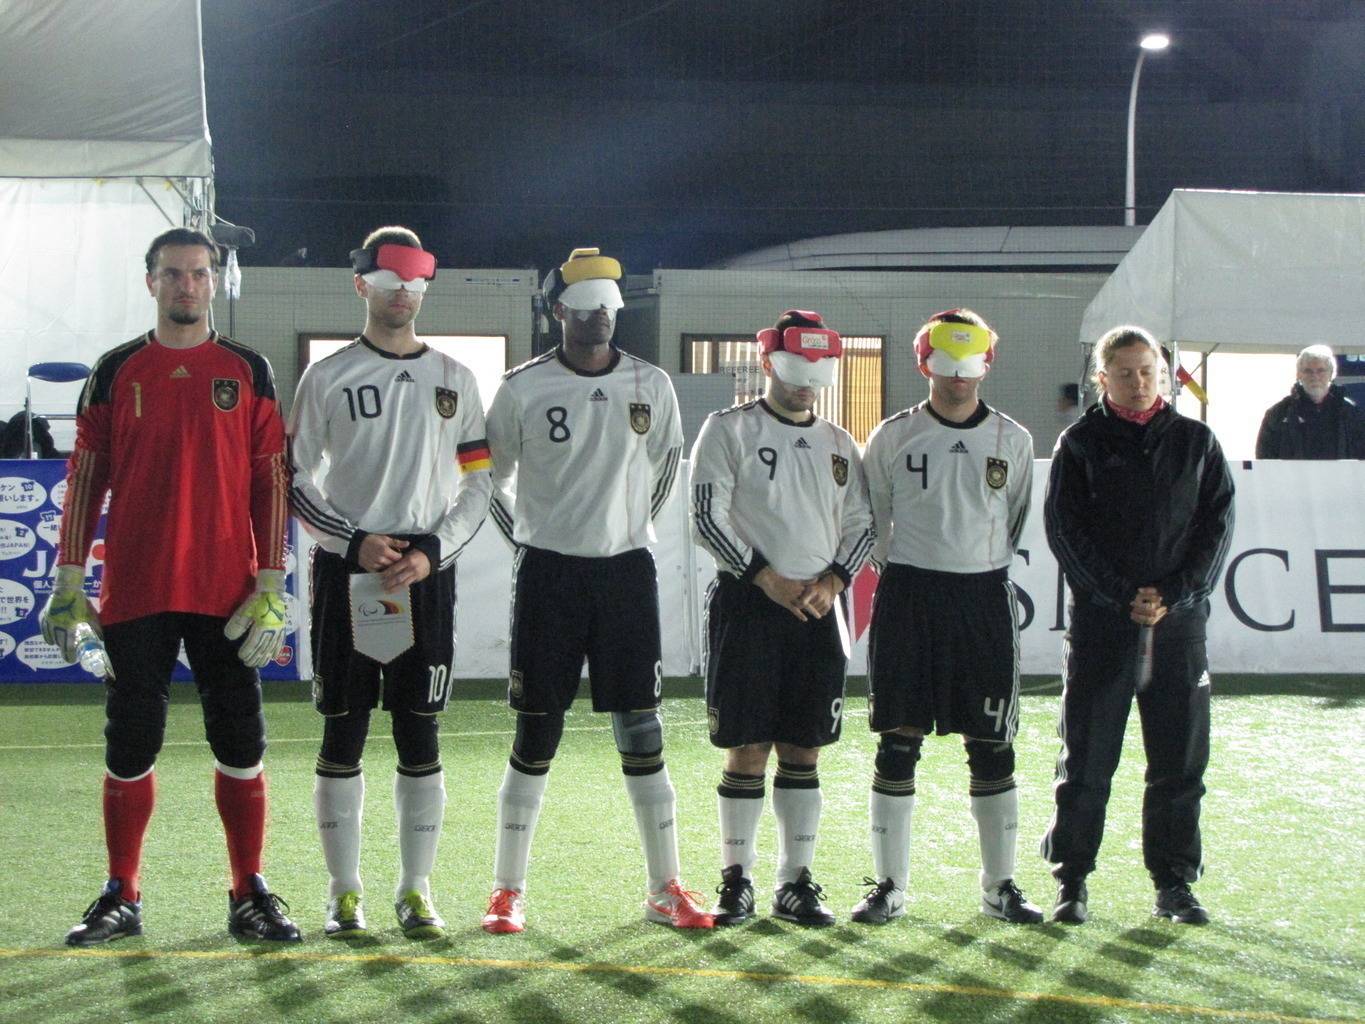 Die Startaufstellung der Deutschen Blindenfußball Nationalmannschaft beim Spiel gegen Südkorea, v.l.n.r.: Milan, Alex, Mulle, Ali, Mulle und Jule (Foto: Julitta Harms)